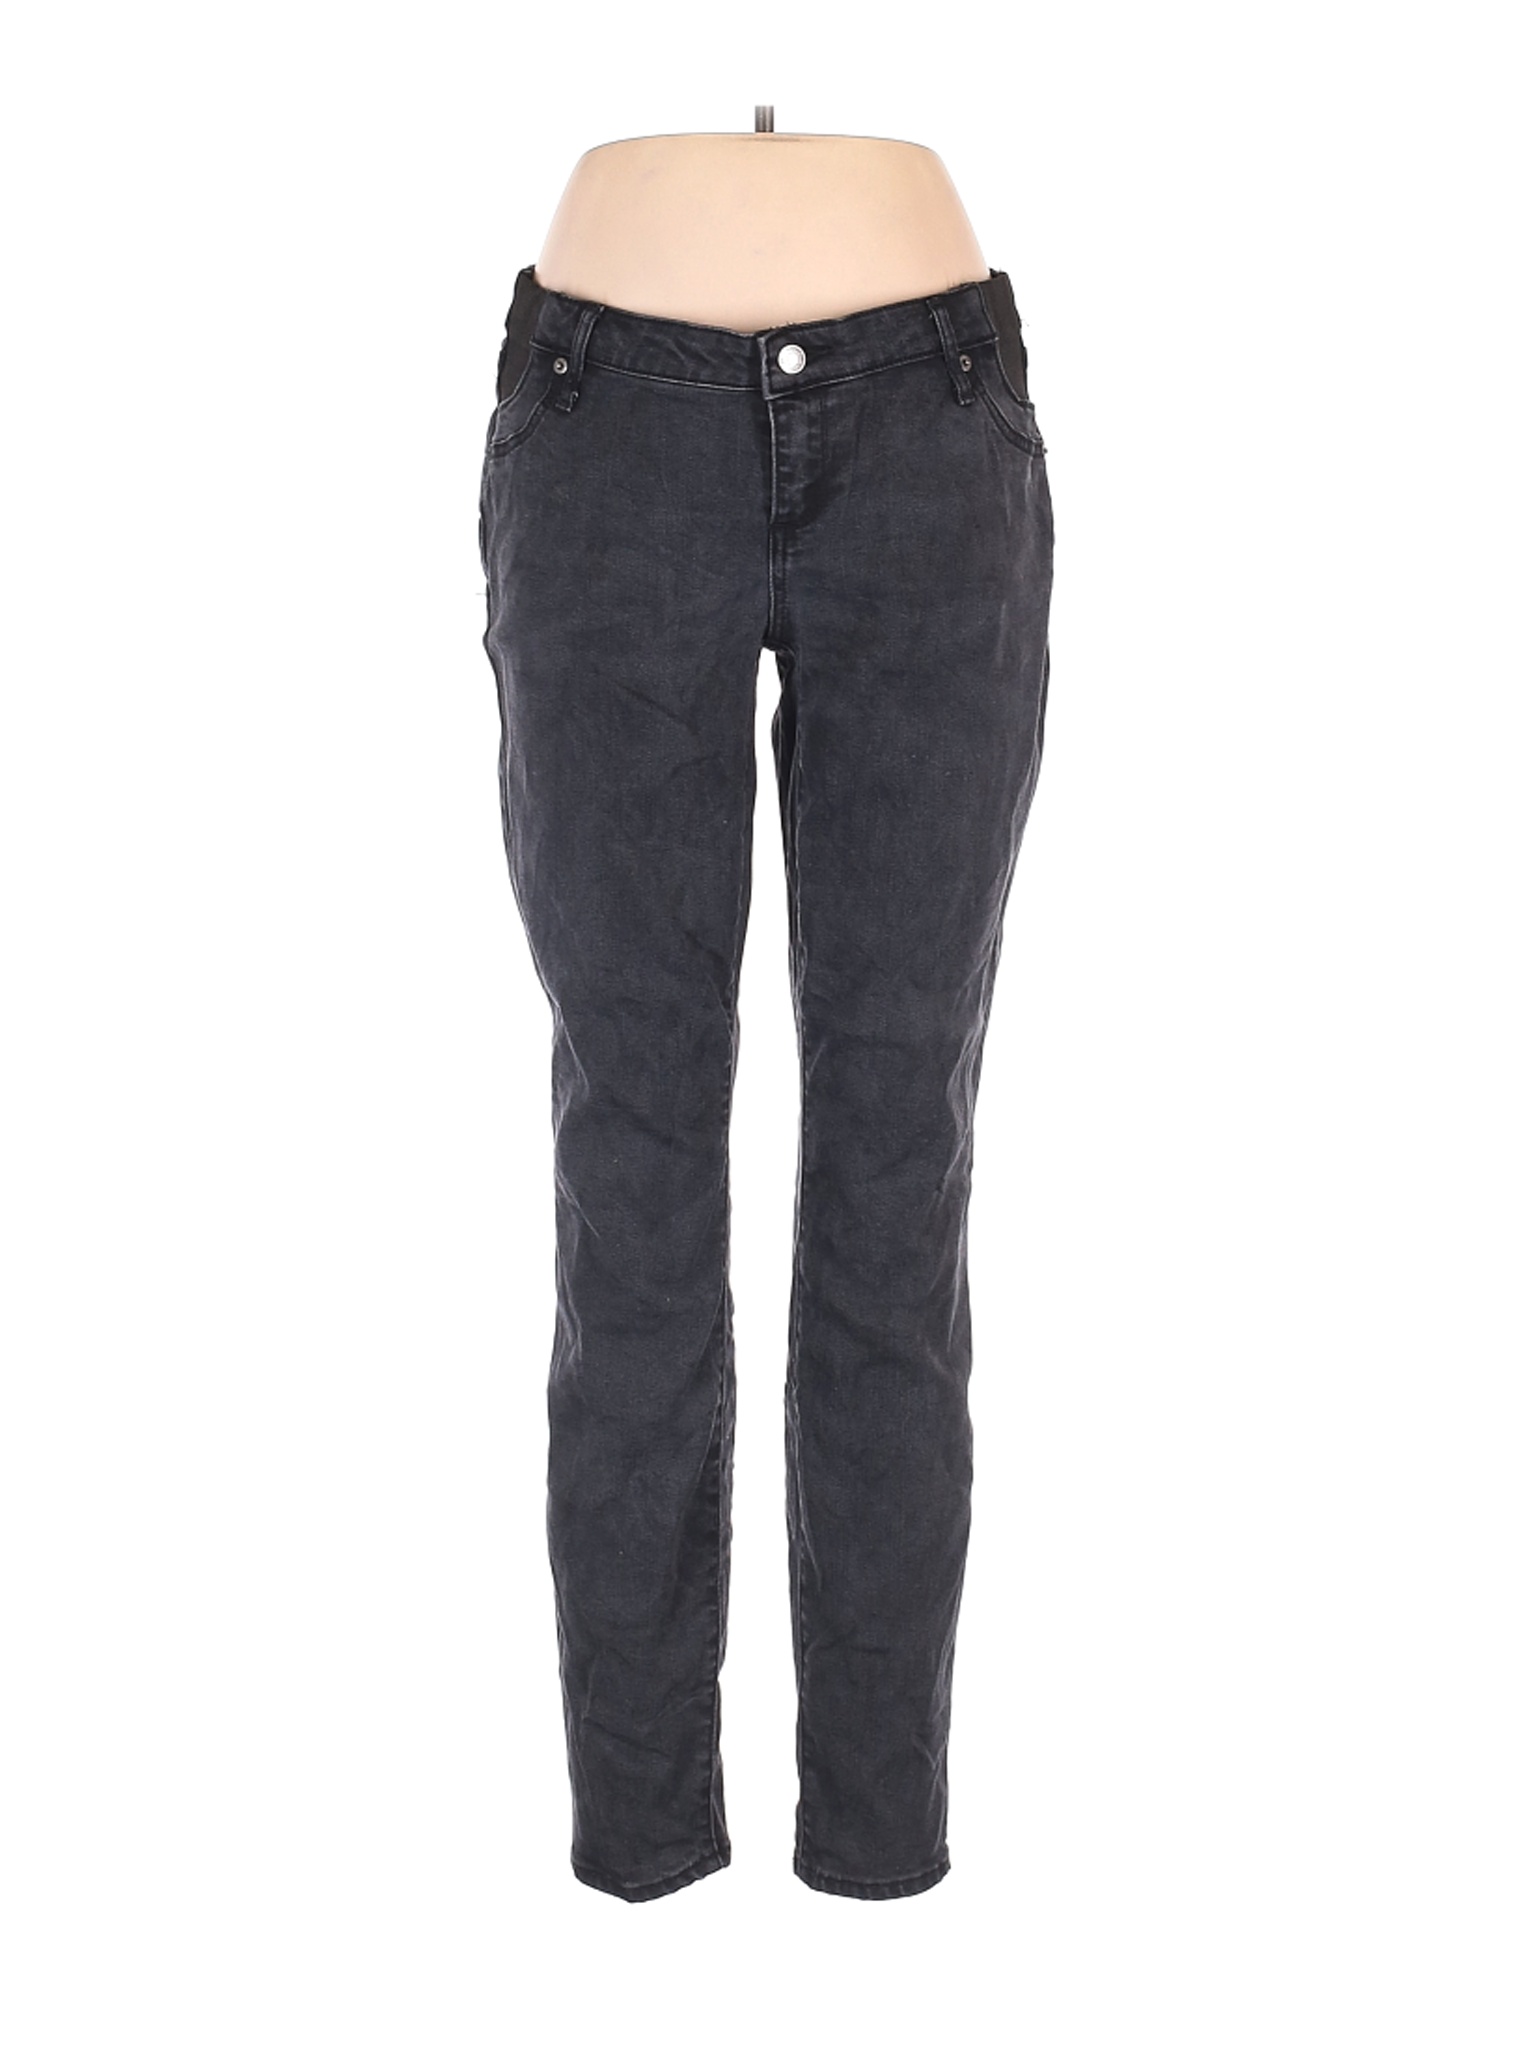 Gap Women Black Jeans 30W | eBay